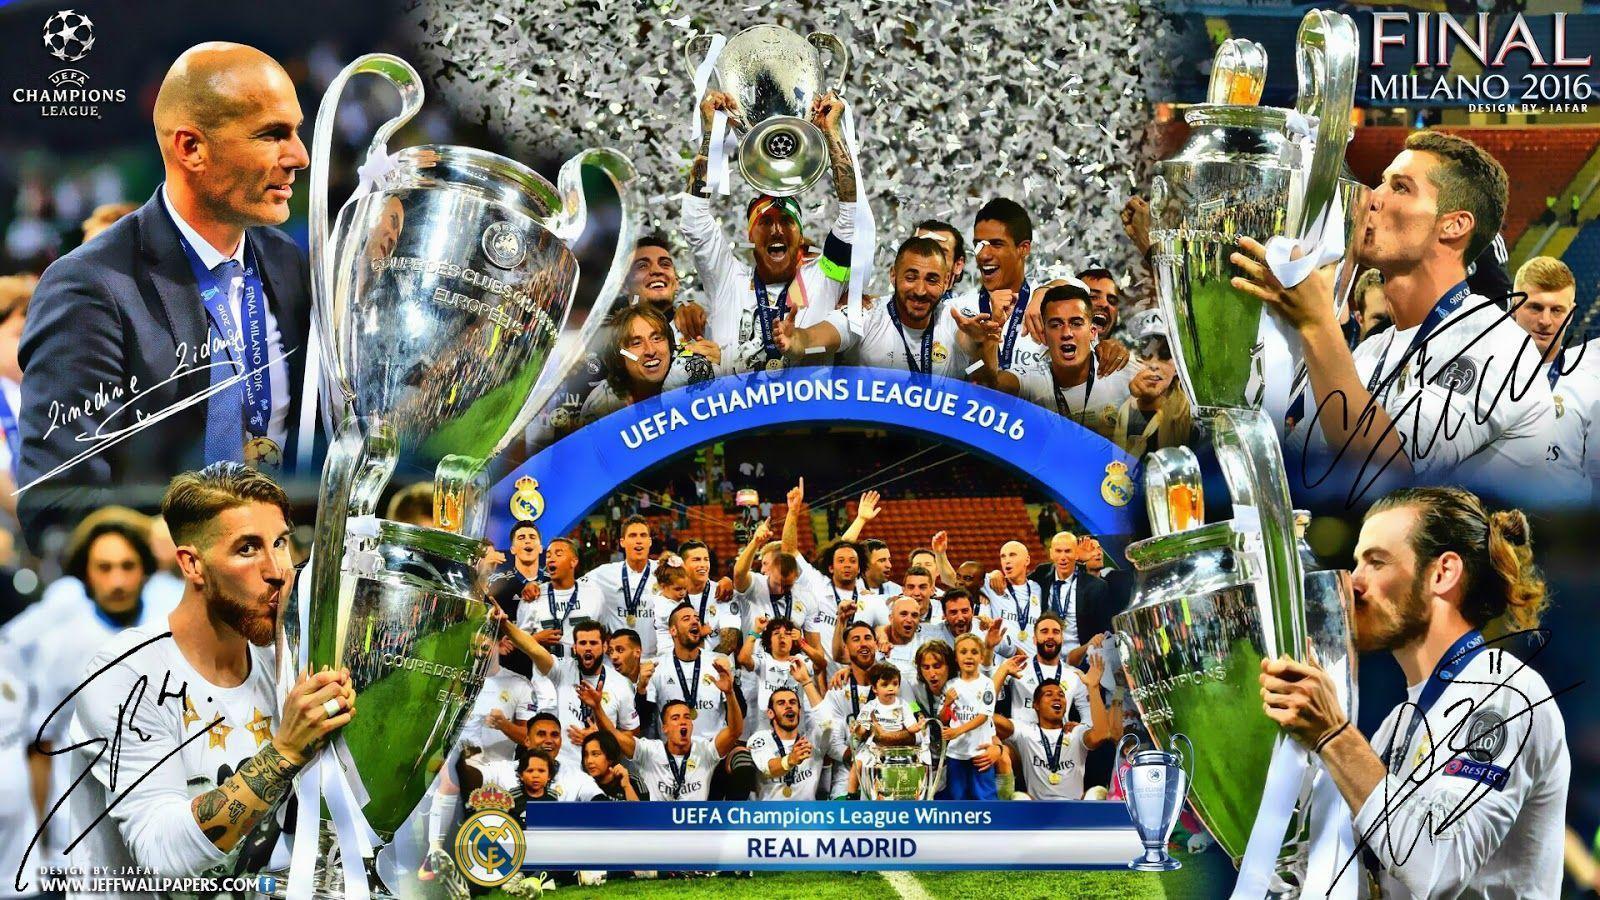 La Undecima Wallpapers Real Madrid